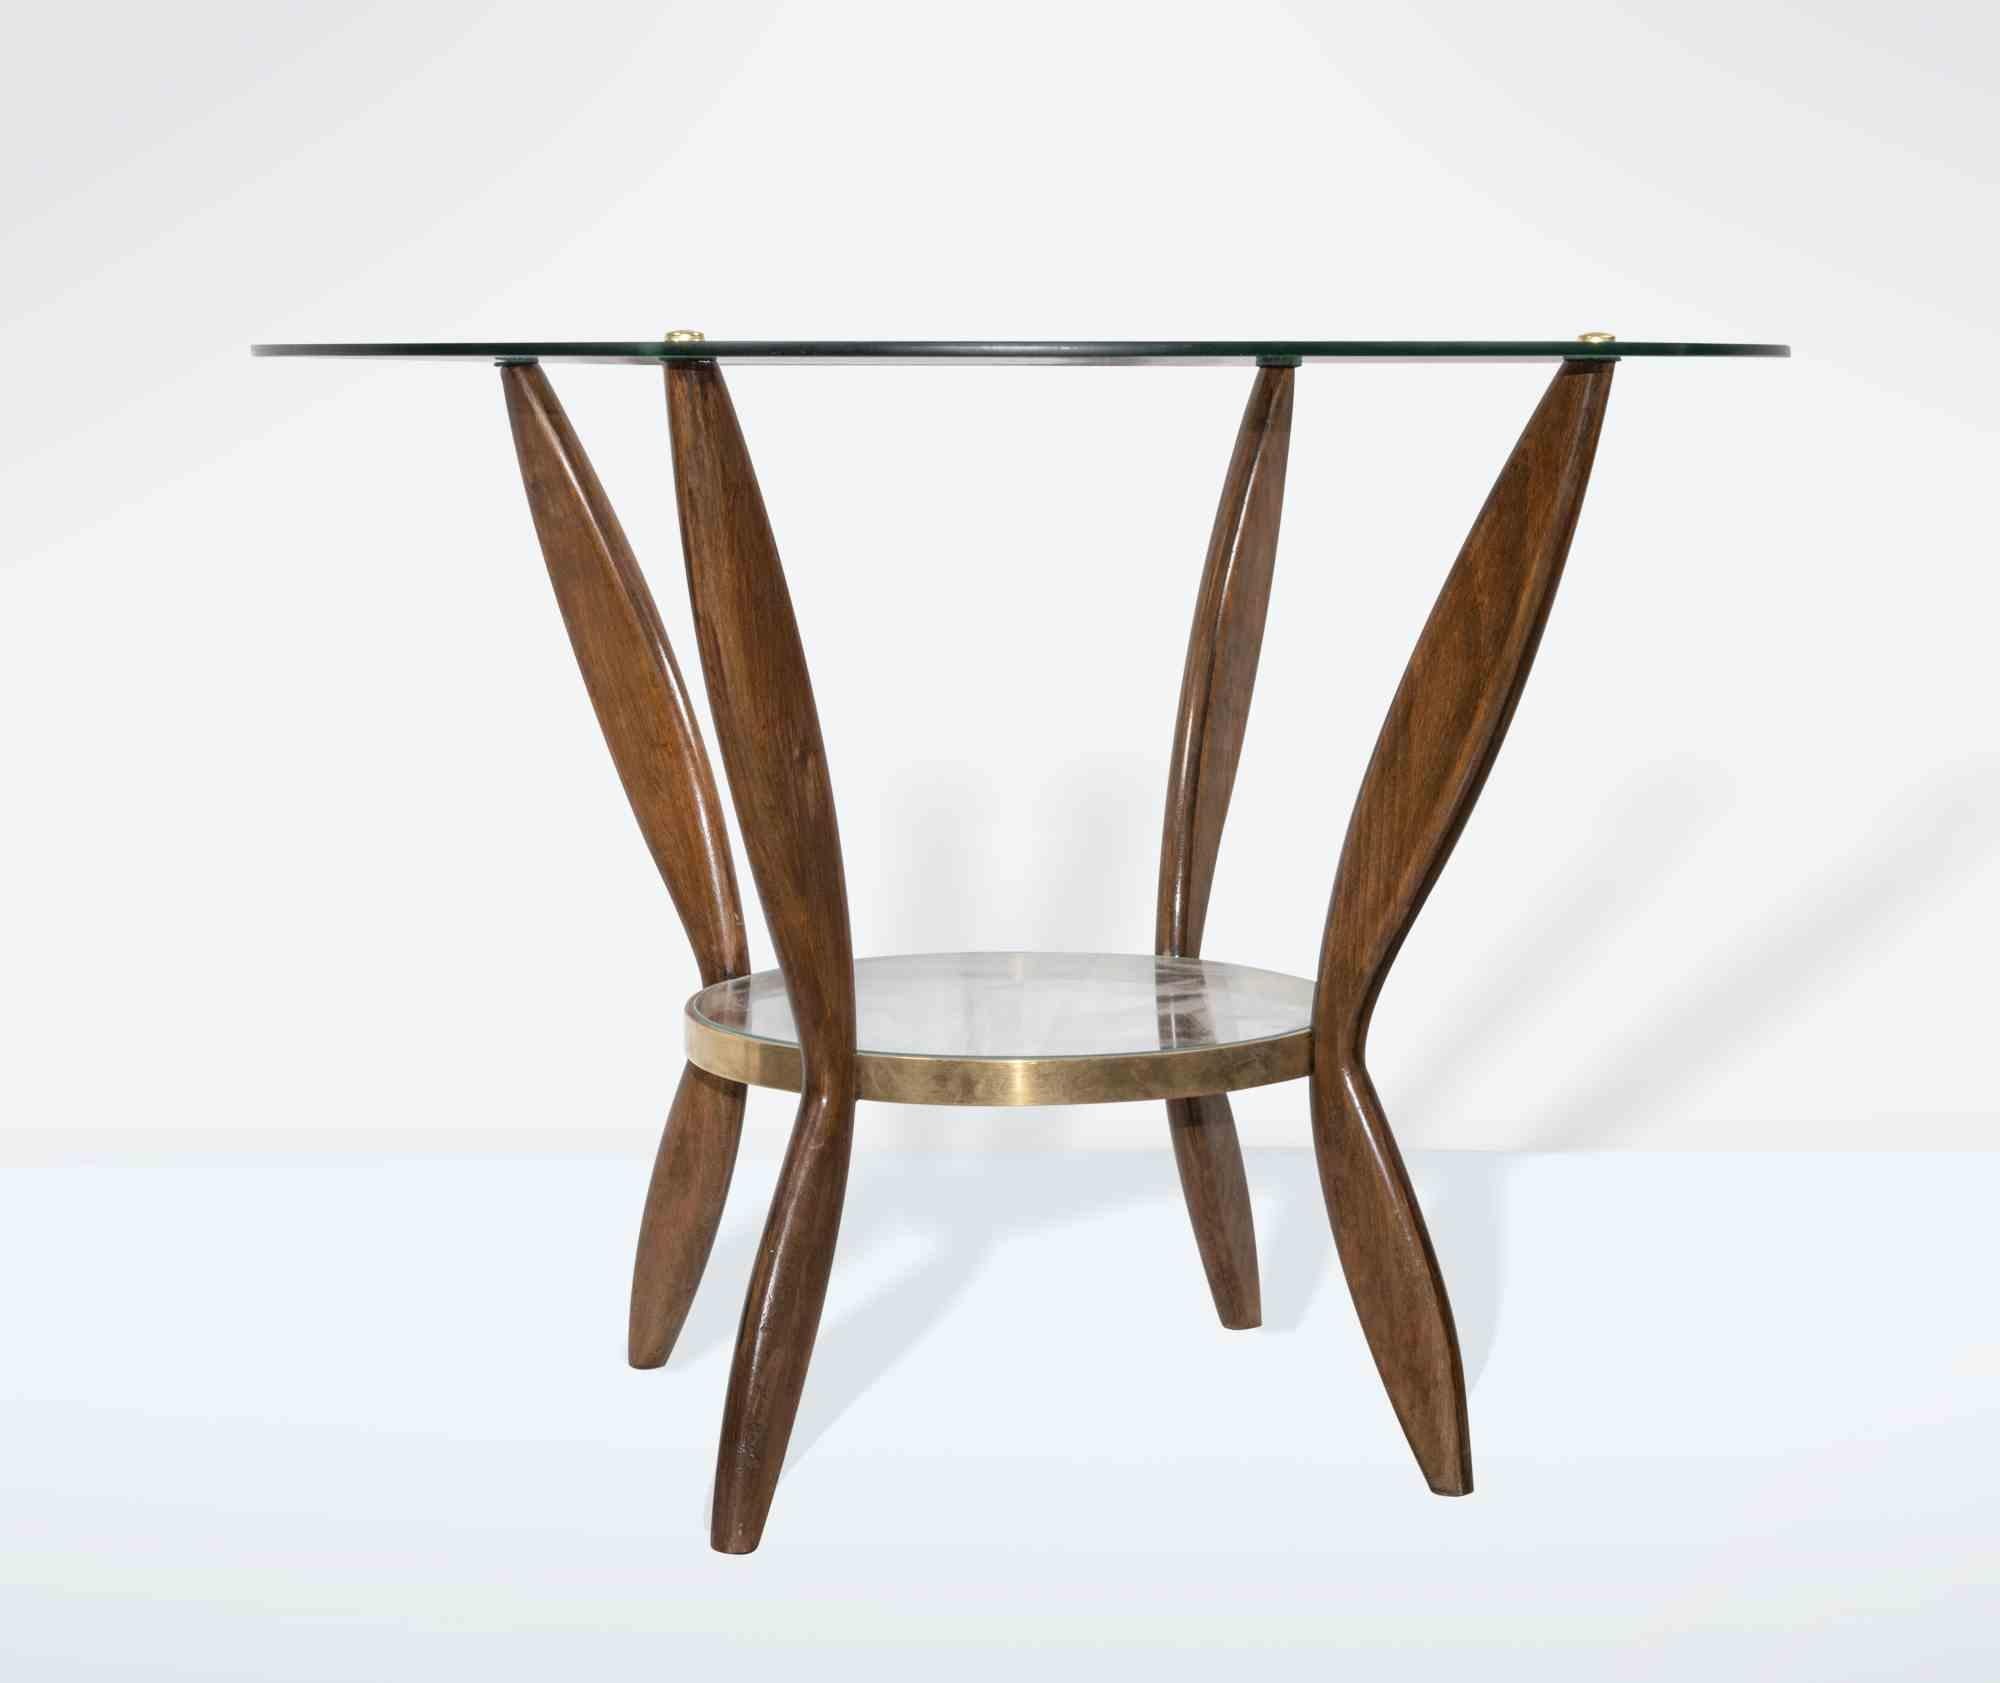 Das Couchtisch-Paar ist ein originelles Design-Möbelstück von Gio Ponti aus den 1950er Jahren.

Schönes Paar Couchtische aus Holz mit Glasplatten und Messingoberflächen. Buchenholz.

Gio Ponti (Mailand 1891 - 1979) ist ein Architekt, Designer